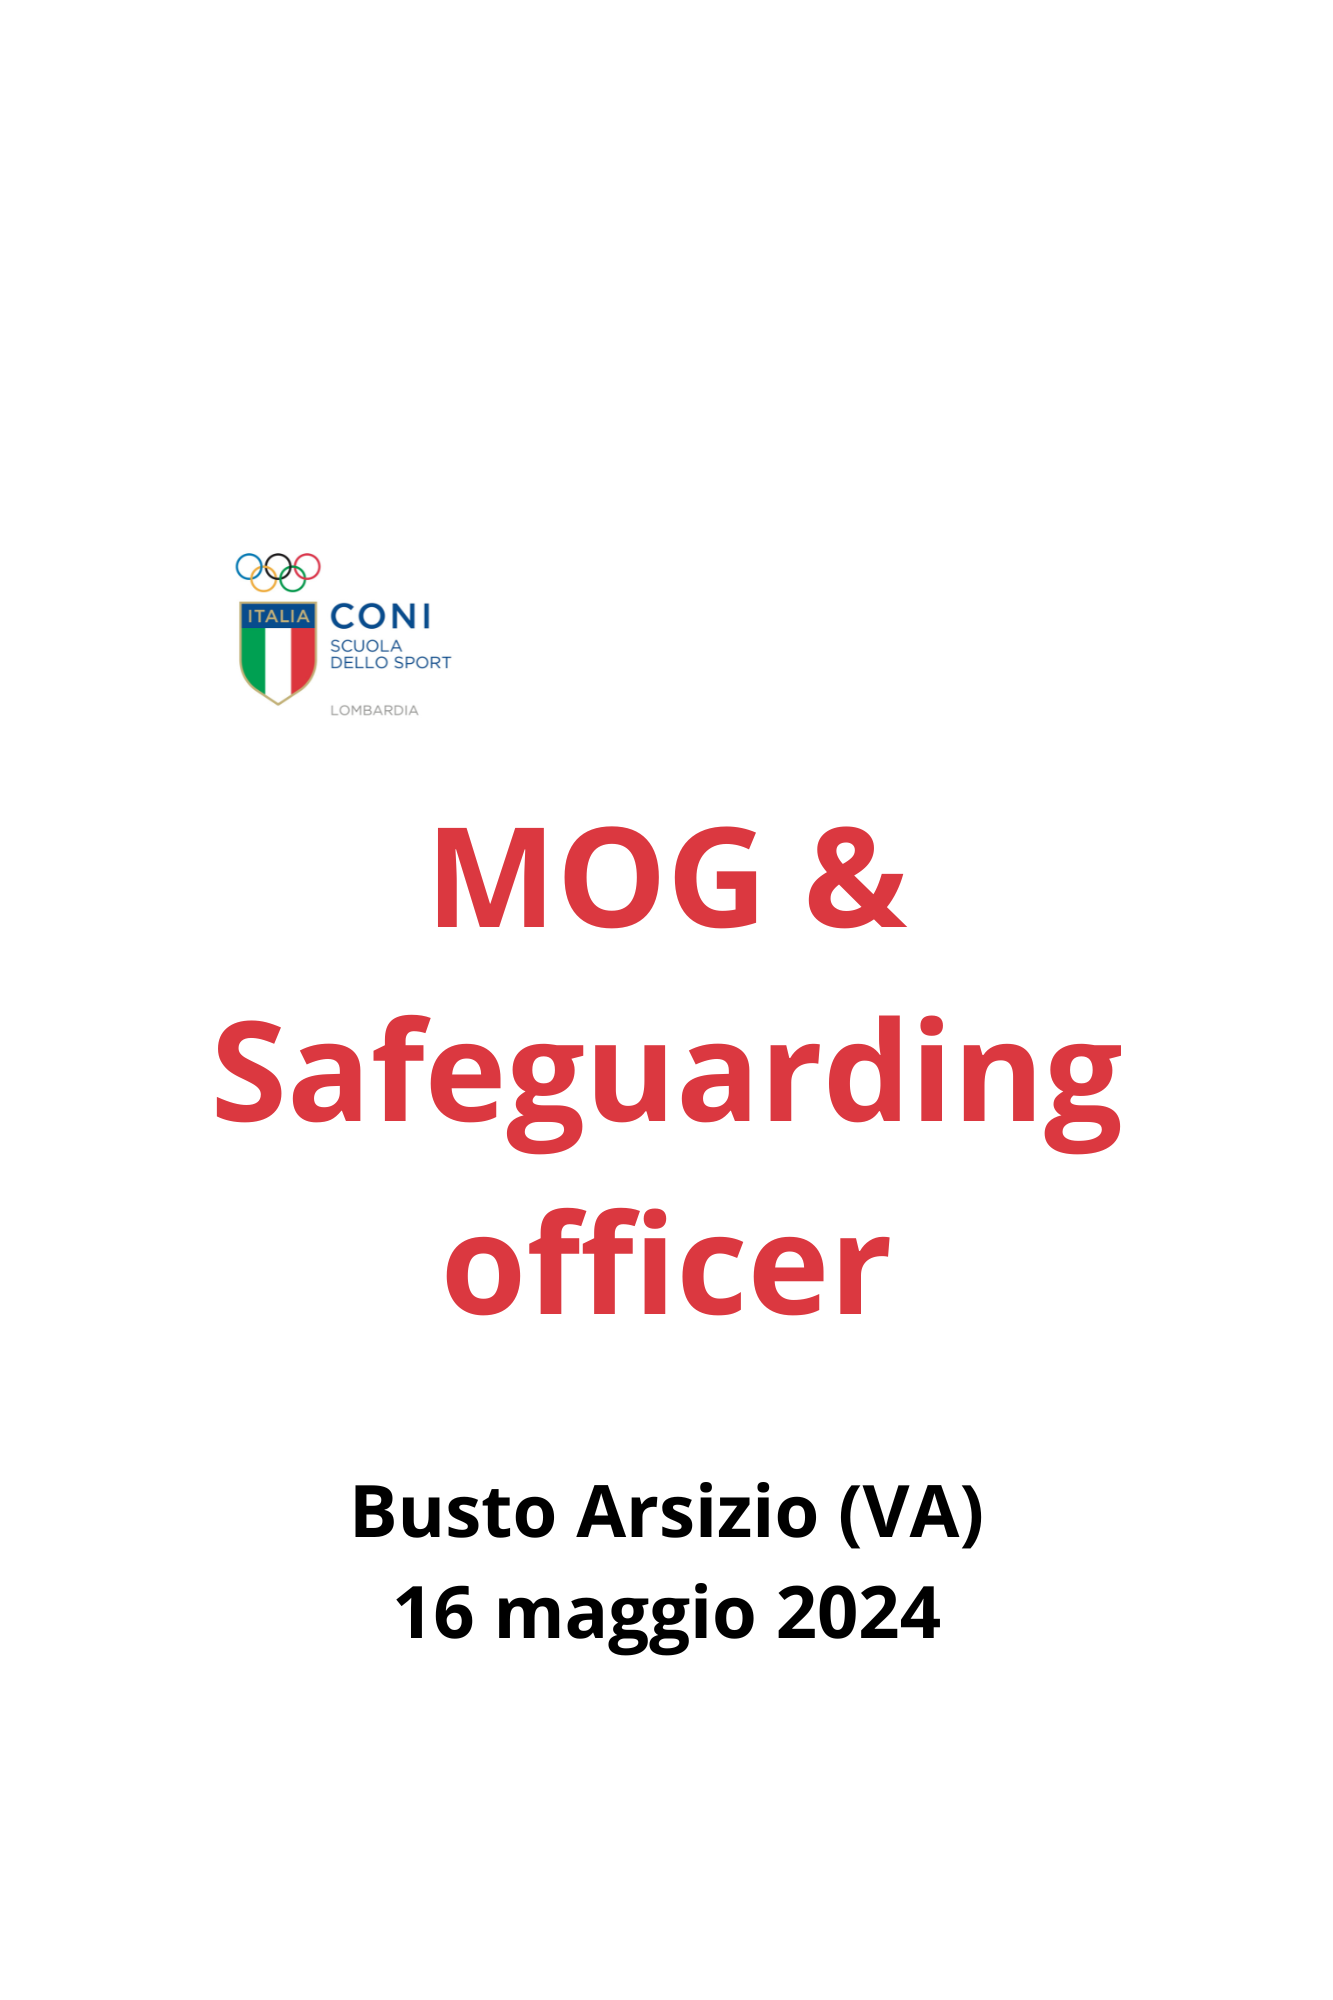 Varese - MOG & Safeguarding Officer